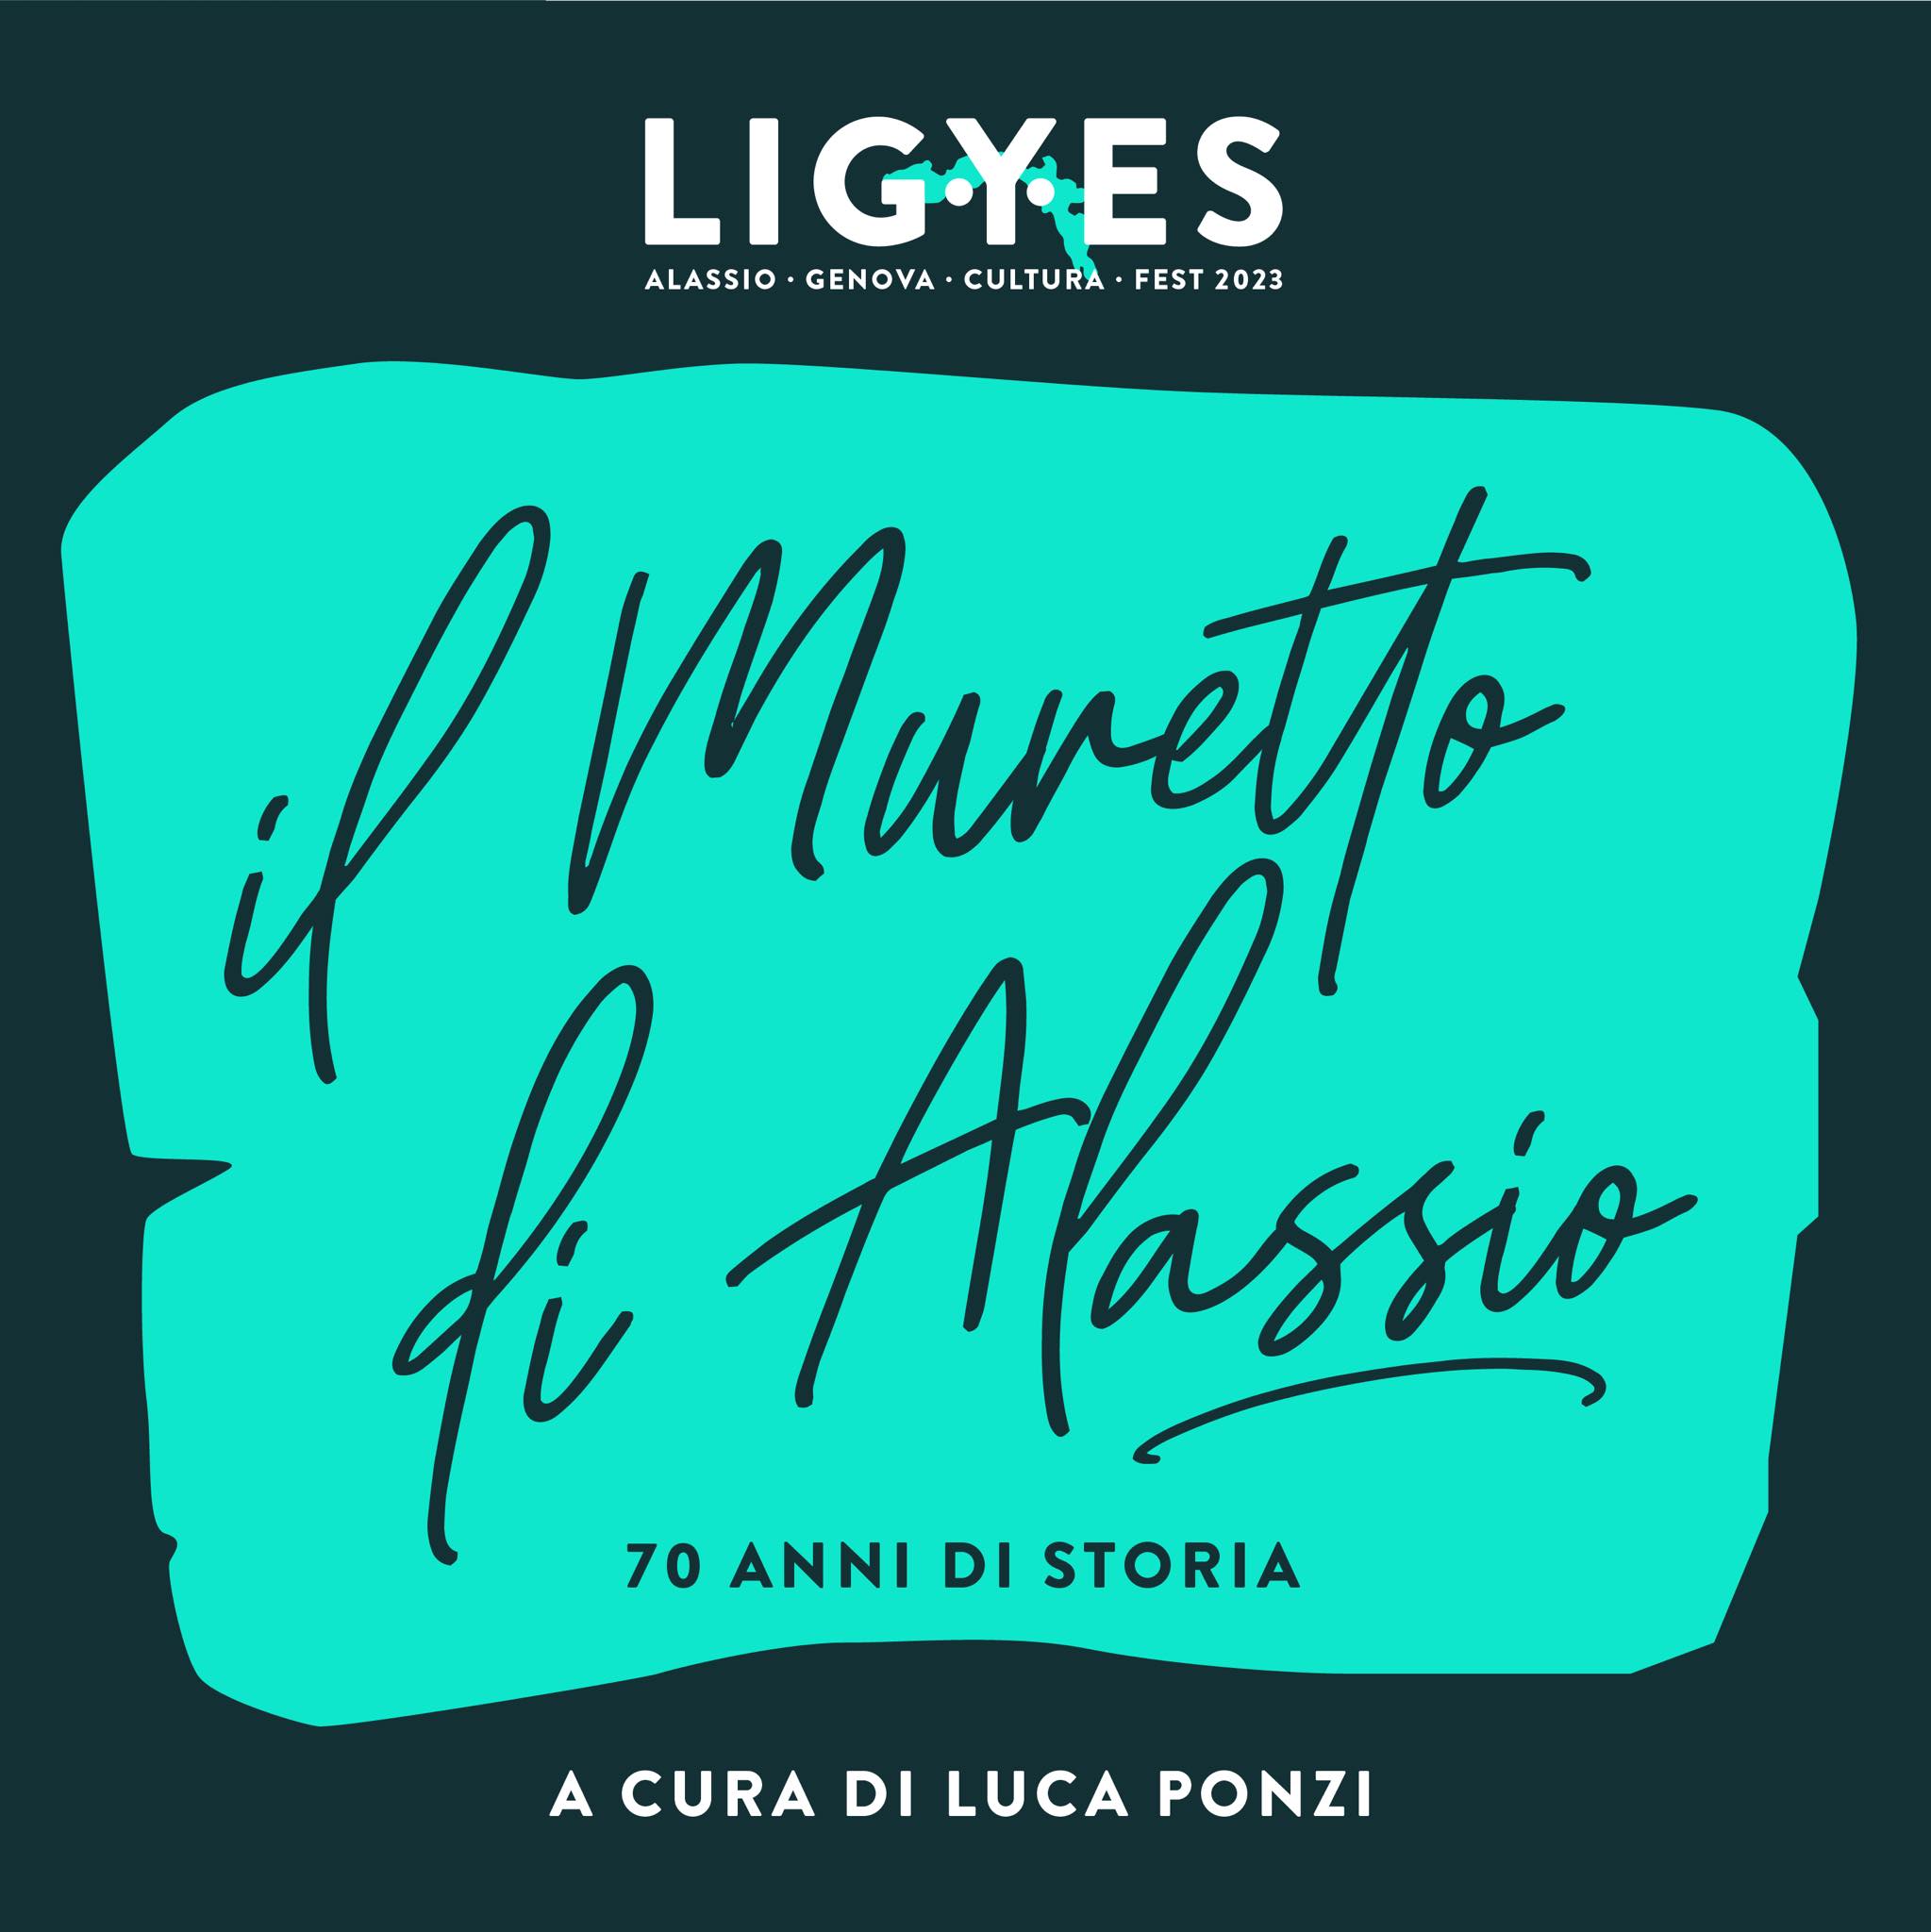 Il Muretto più celebre d’Italia raccontato nell’entusiasmante podcast di Ligyes Alassio Genova Cultura Fest 2023